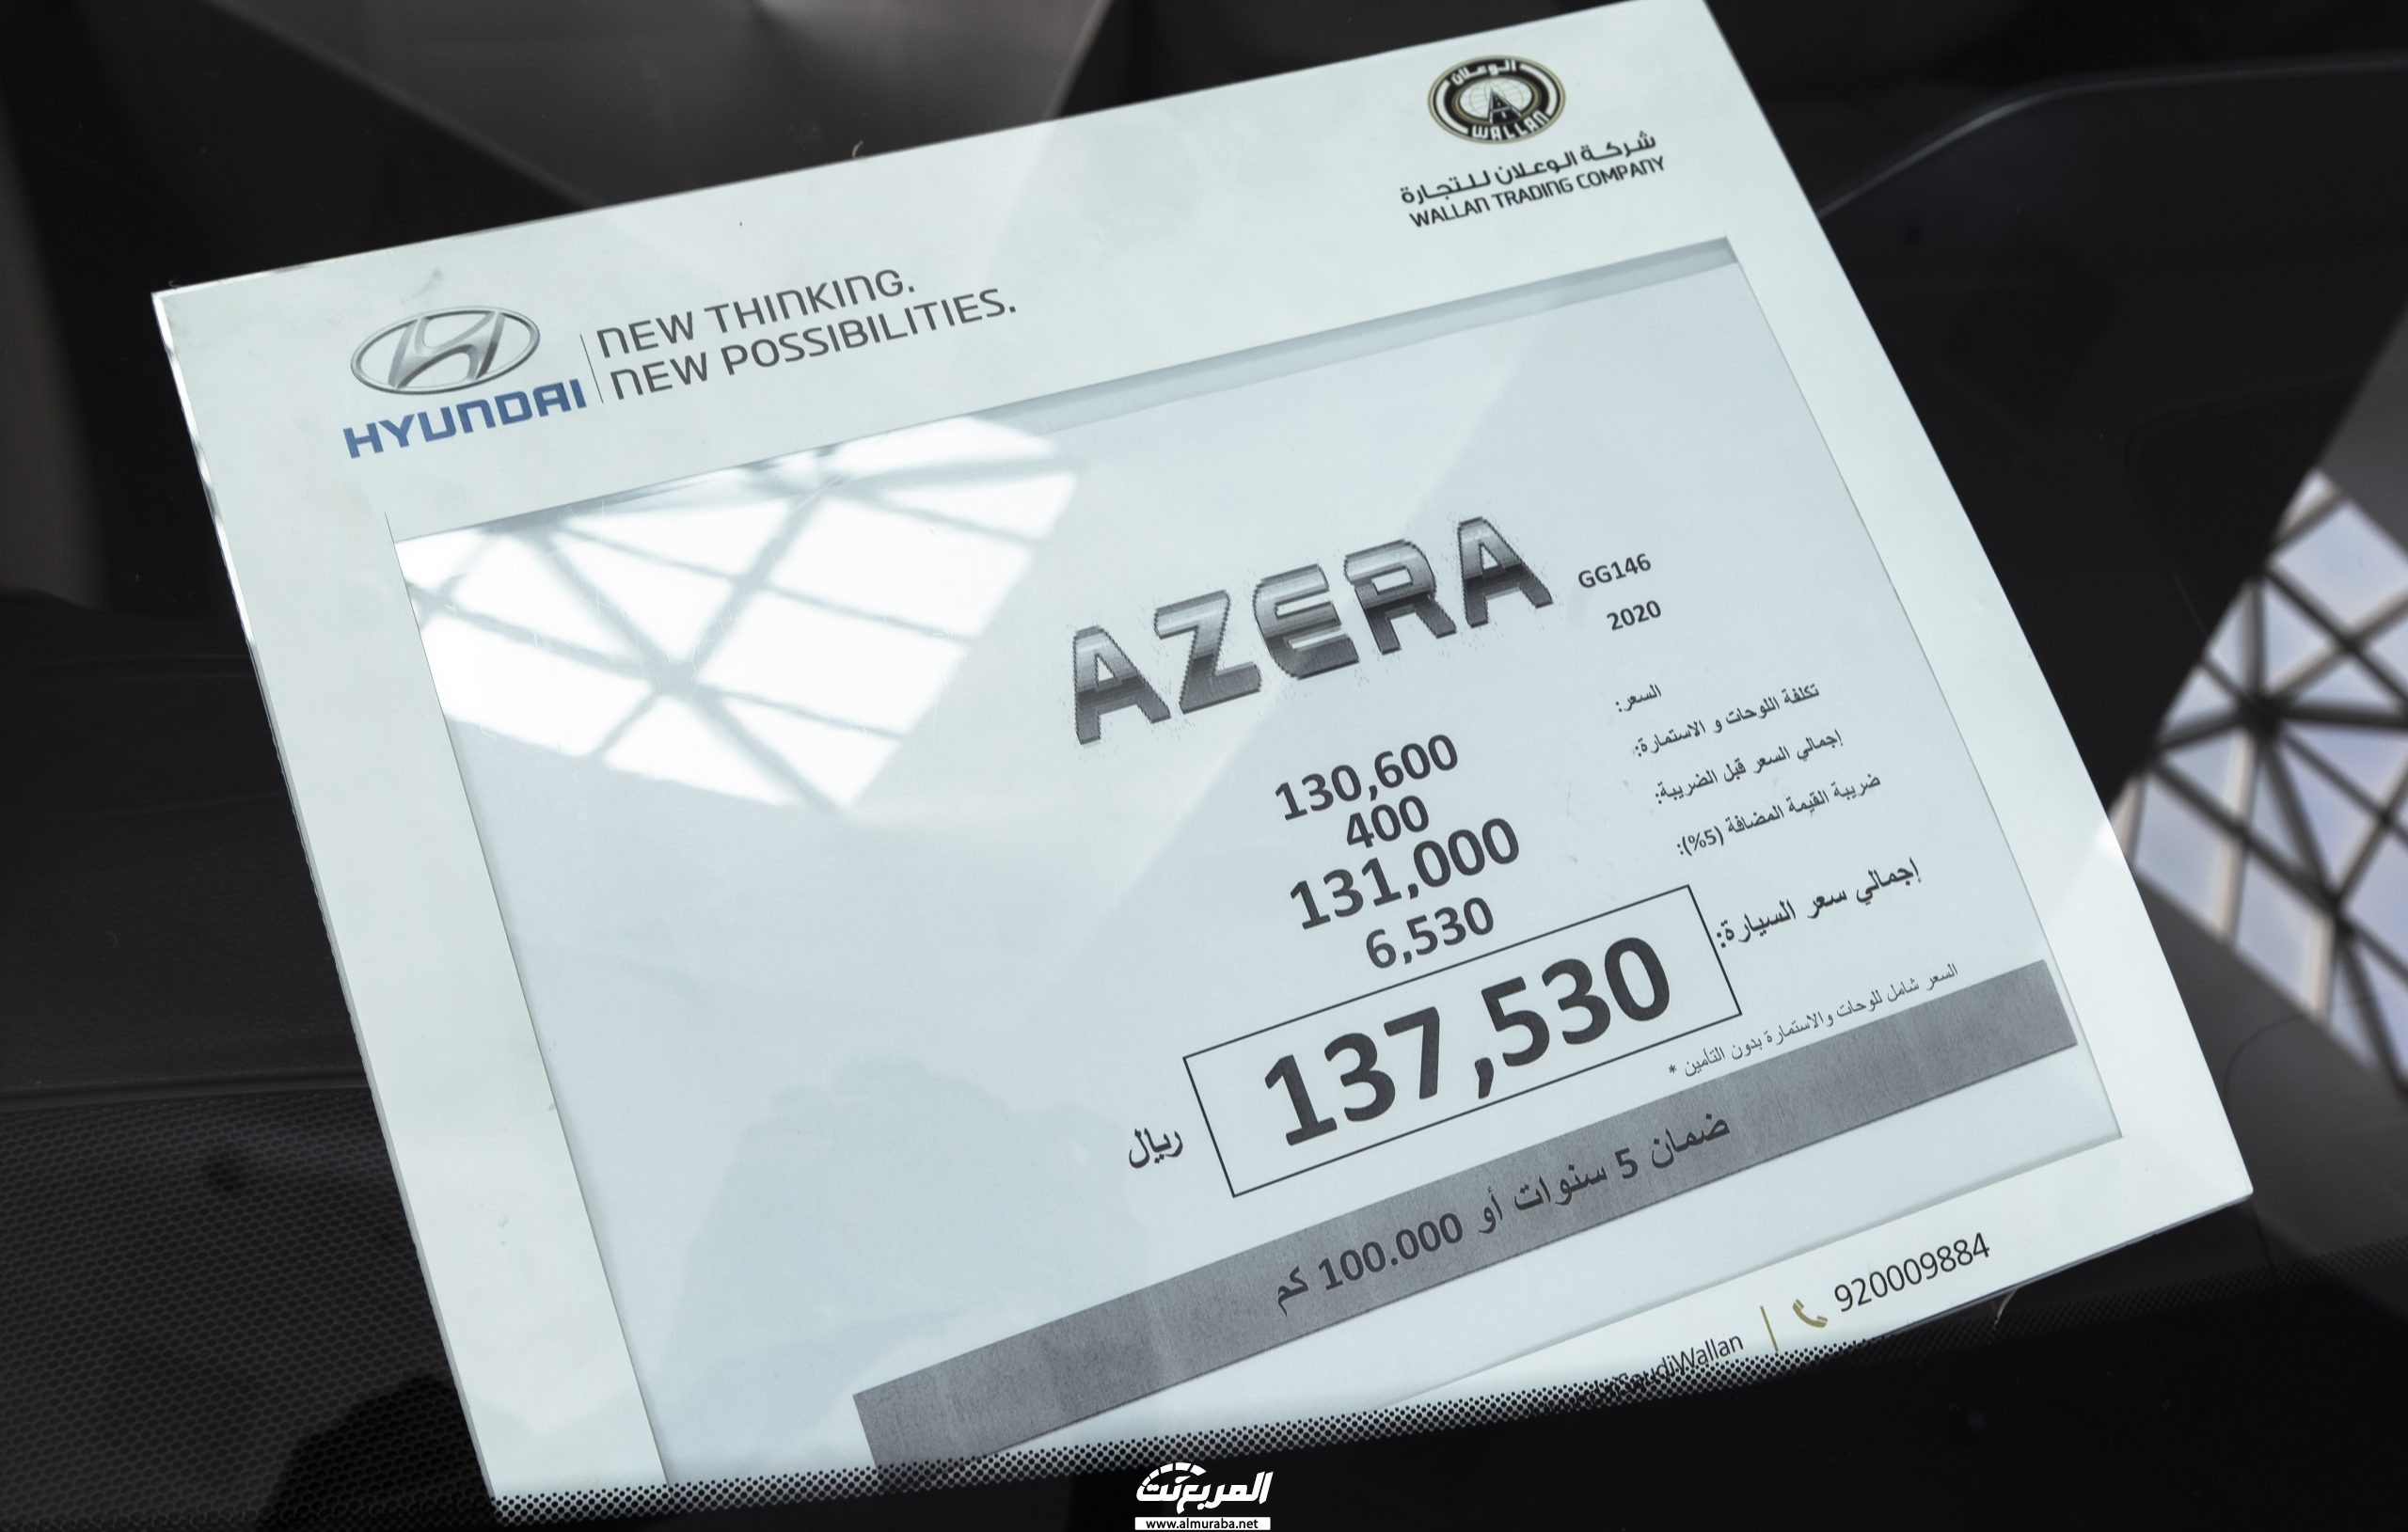 مواصفات هيونداي ازيرا 2020 في السعودية Hyundai Azera 72